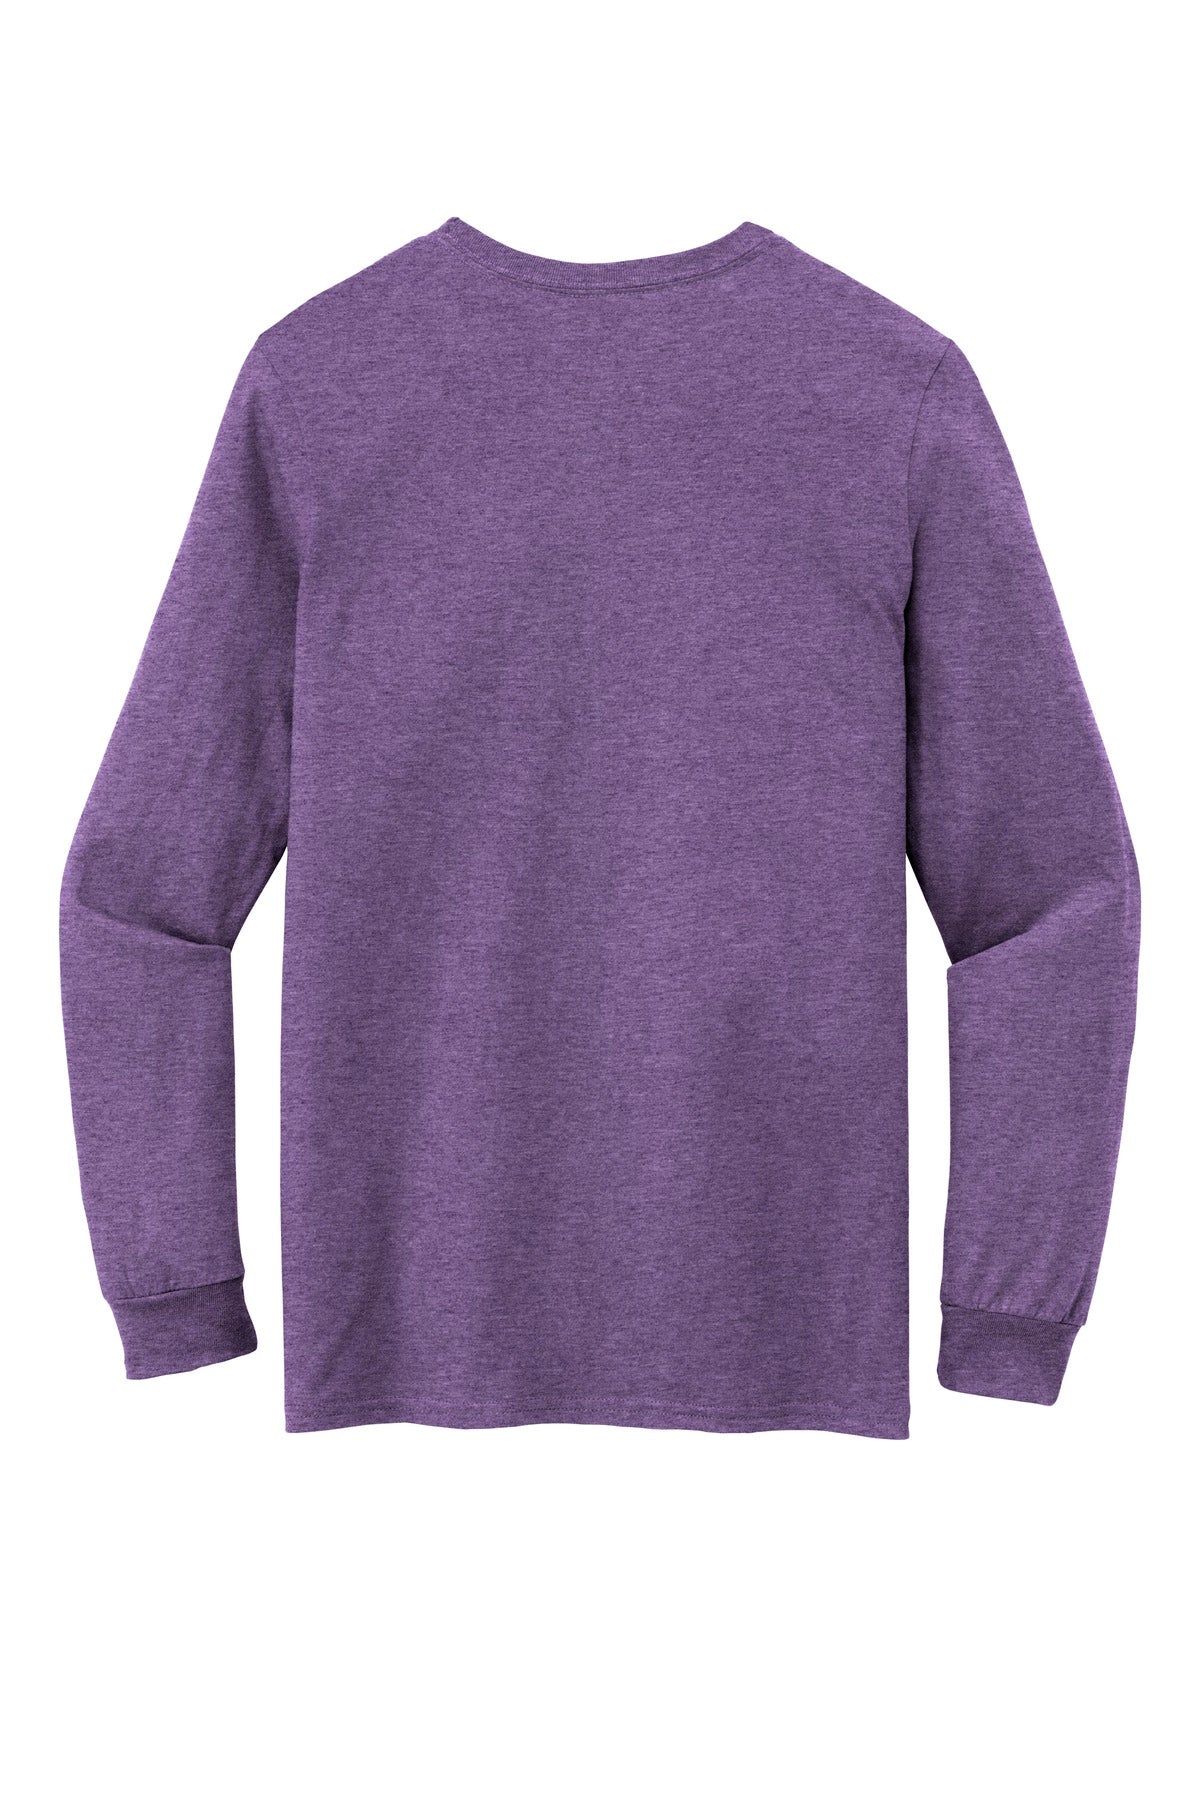 Gildan 100% Combed Ring Spun Cotton Long Sleeve T-Shirt. 949